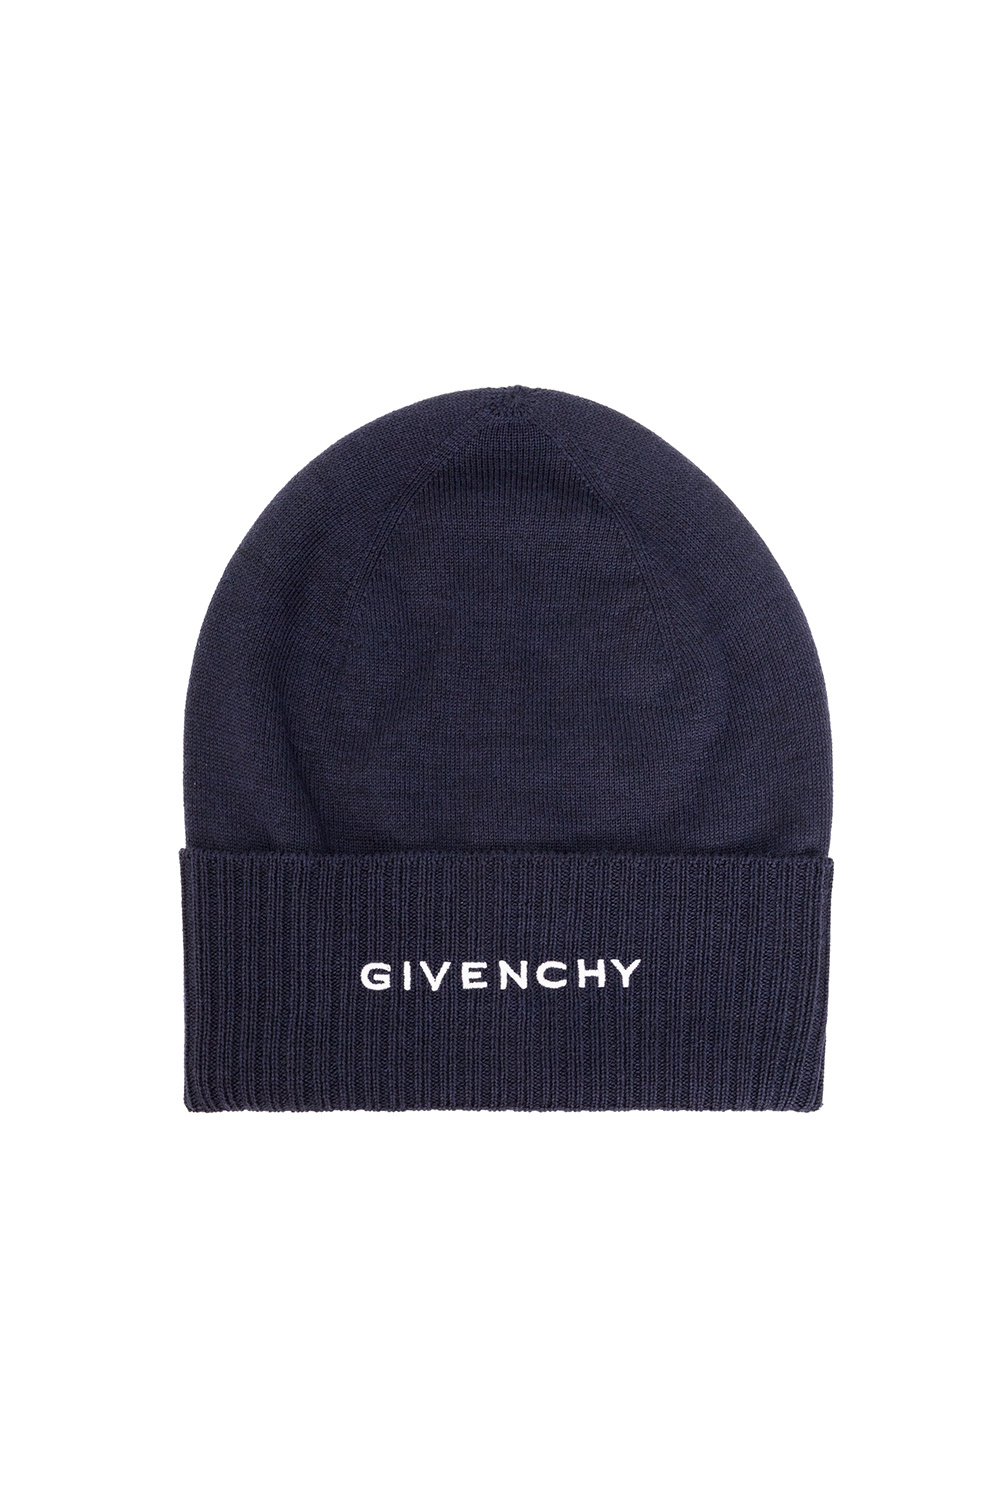 Givenchy Givenchy Kids logo-print shorties